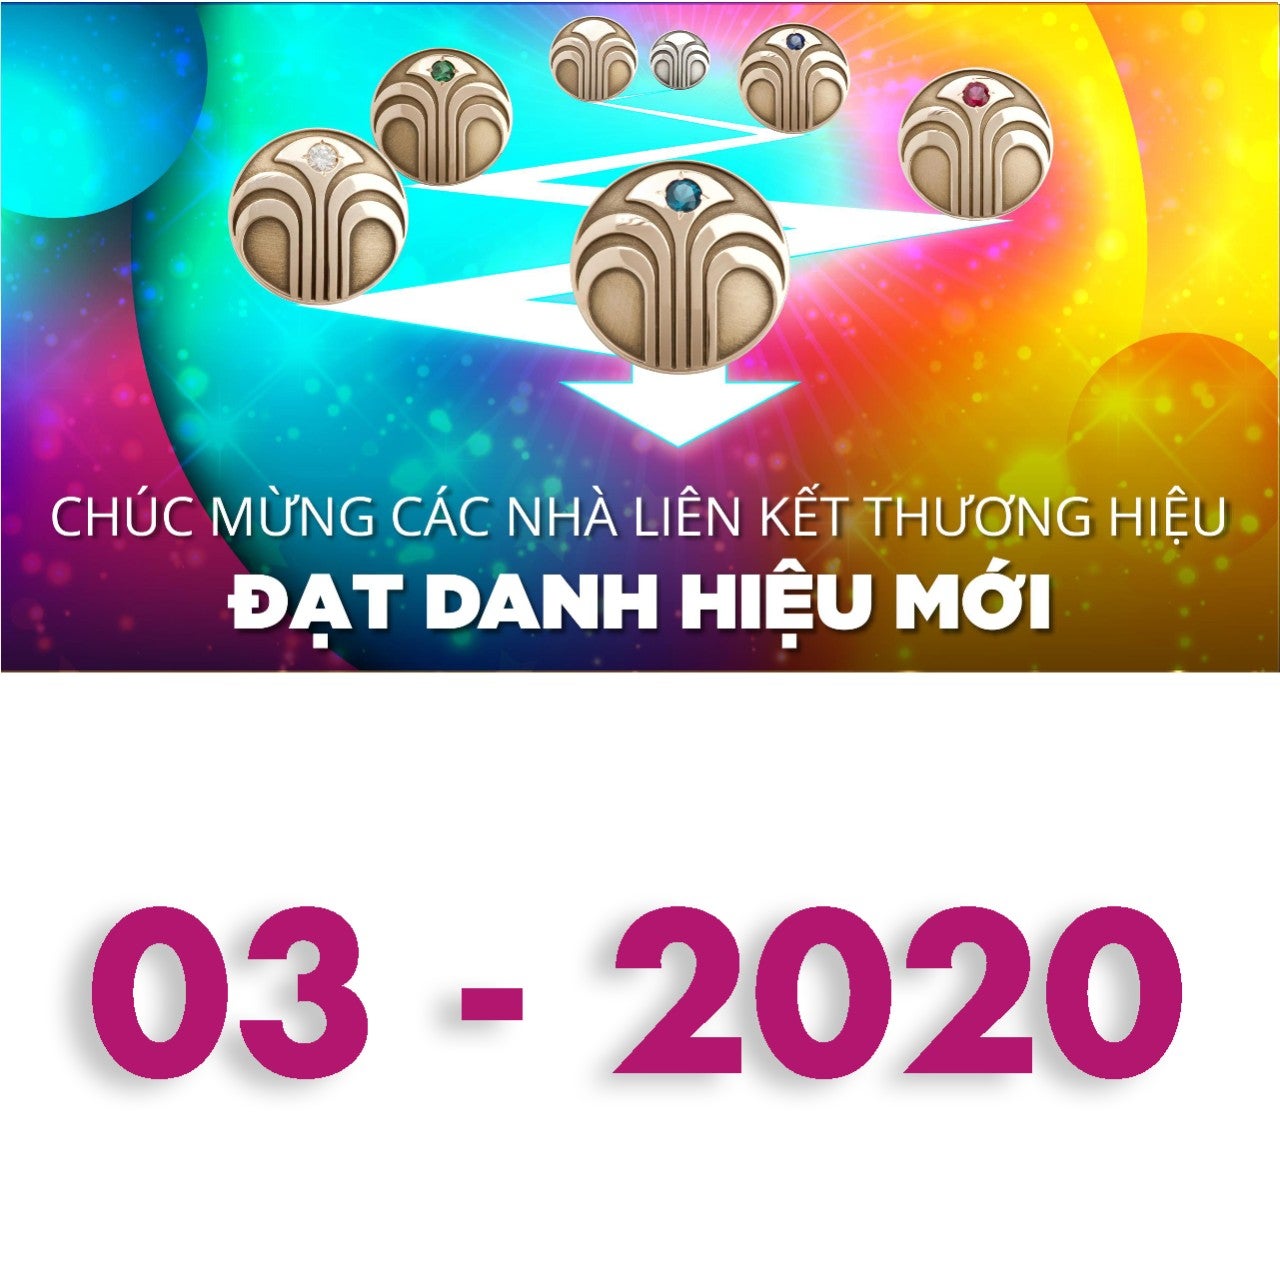 2020-03